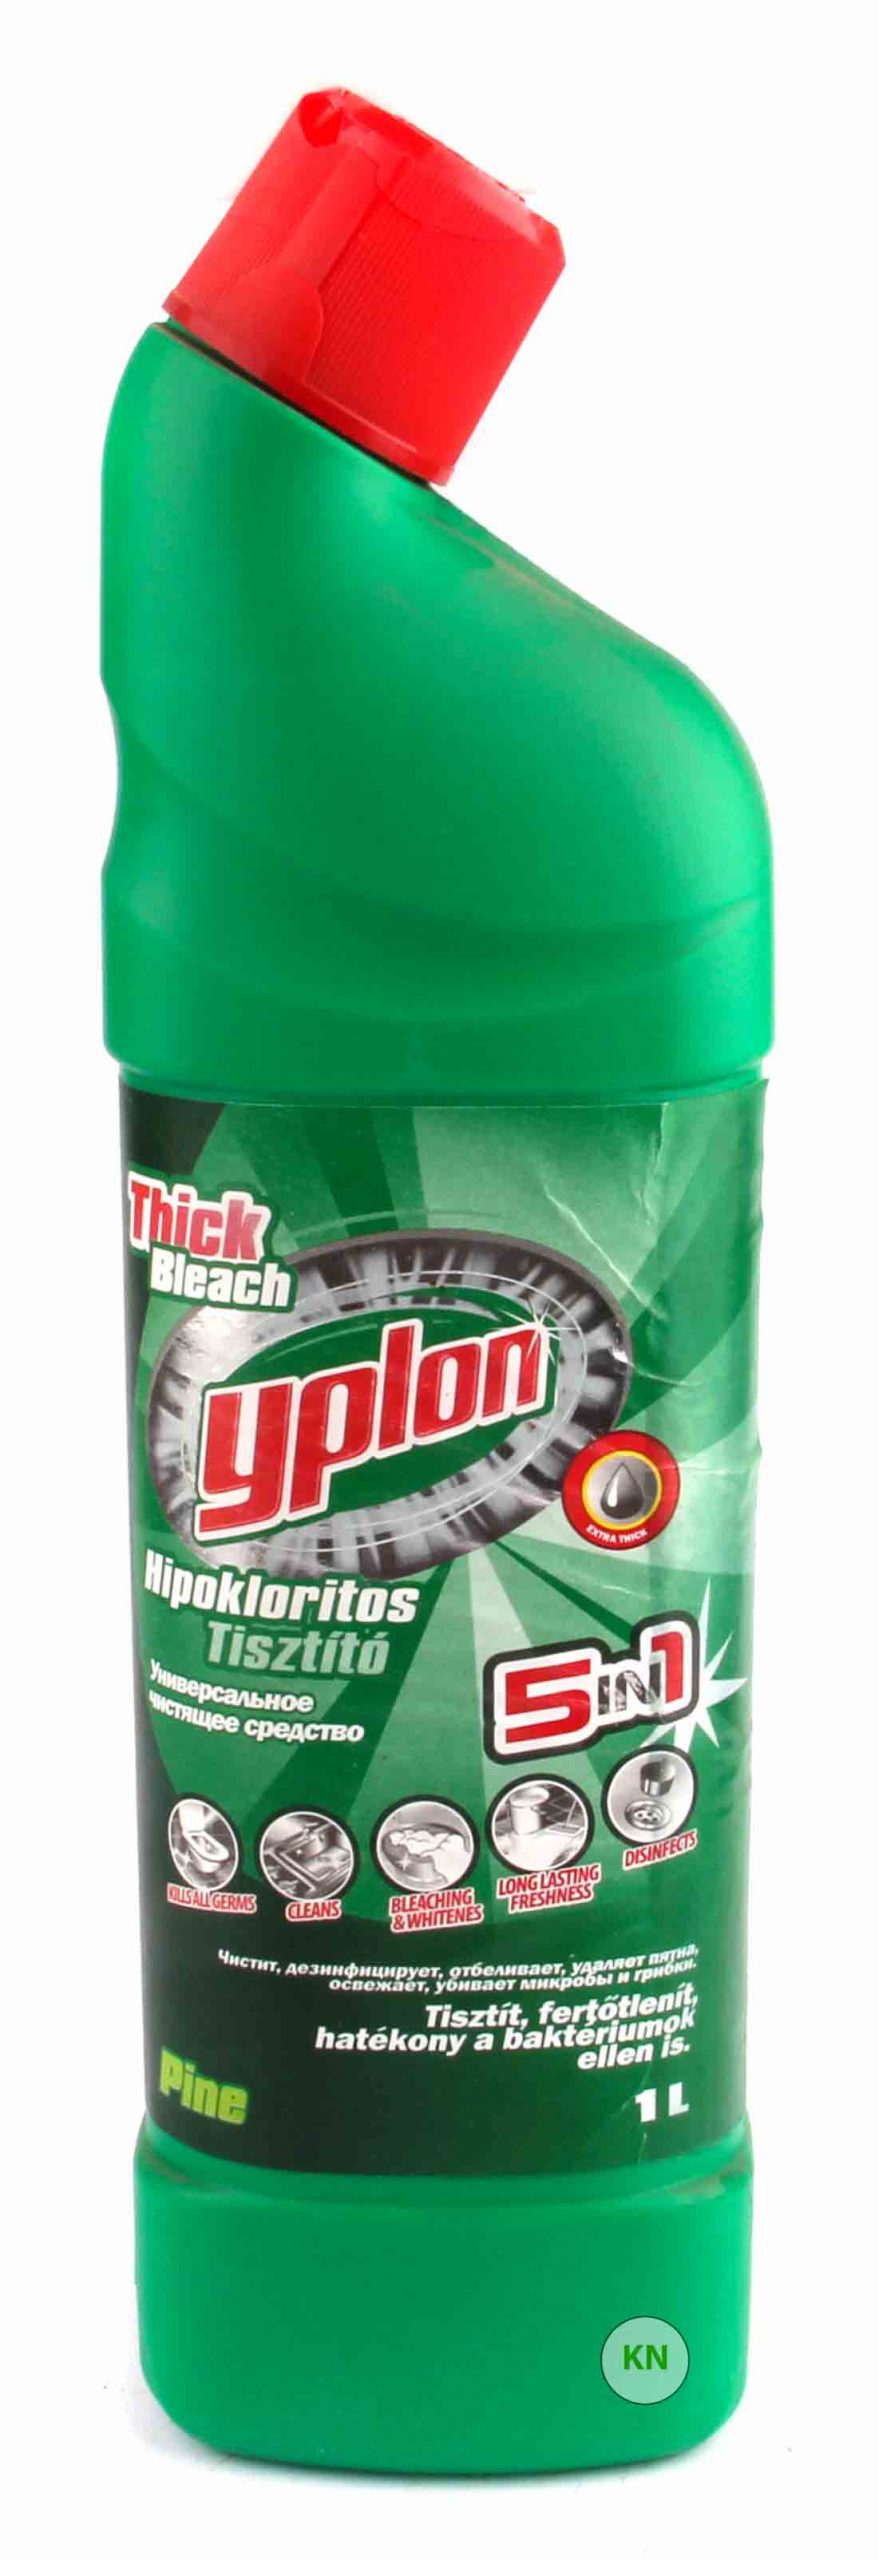 Средство для чистки санизделий "Yplon", 1000 мл